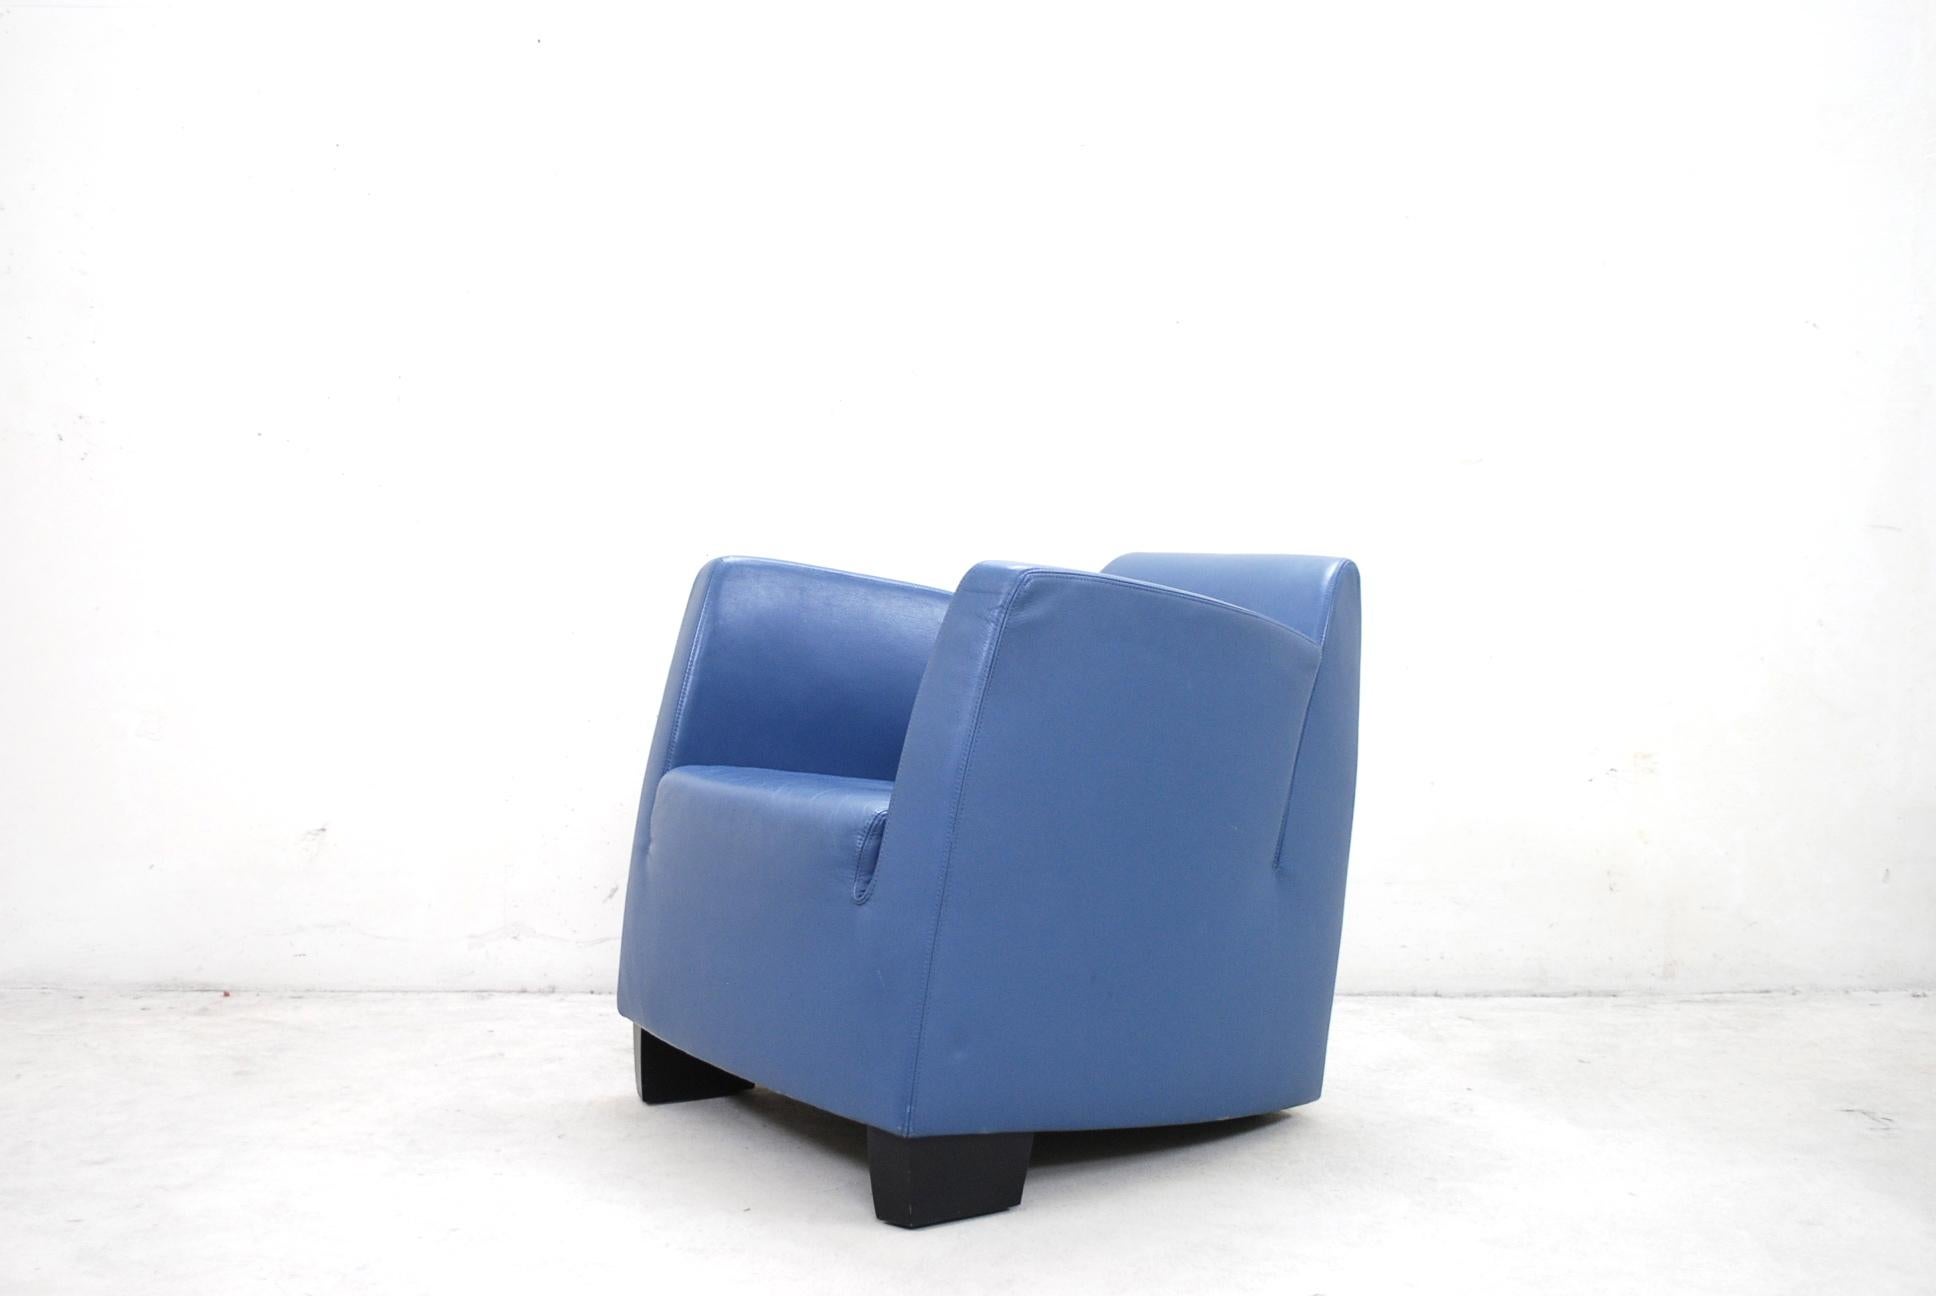 Dieser kleine Sessel Sena DS 2620 wurde von Kurt Erni 1995 für das Schweizer Manufakturteam von Wellis entworfen.
De Sede kaufte Team by Wellis im Jahr 2012 und dieser Sessel wurde seither 2012 von De Sede produziert.
Dieser Stuhl war die erste